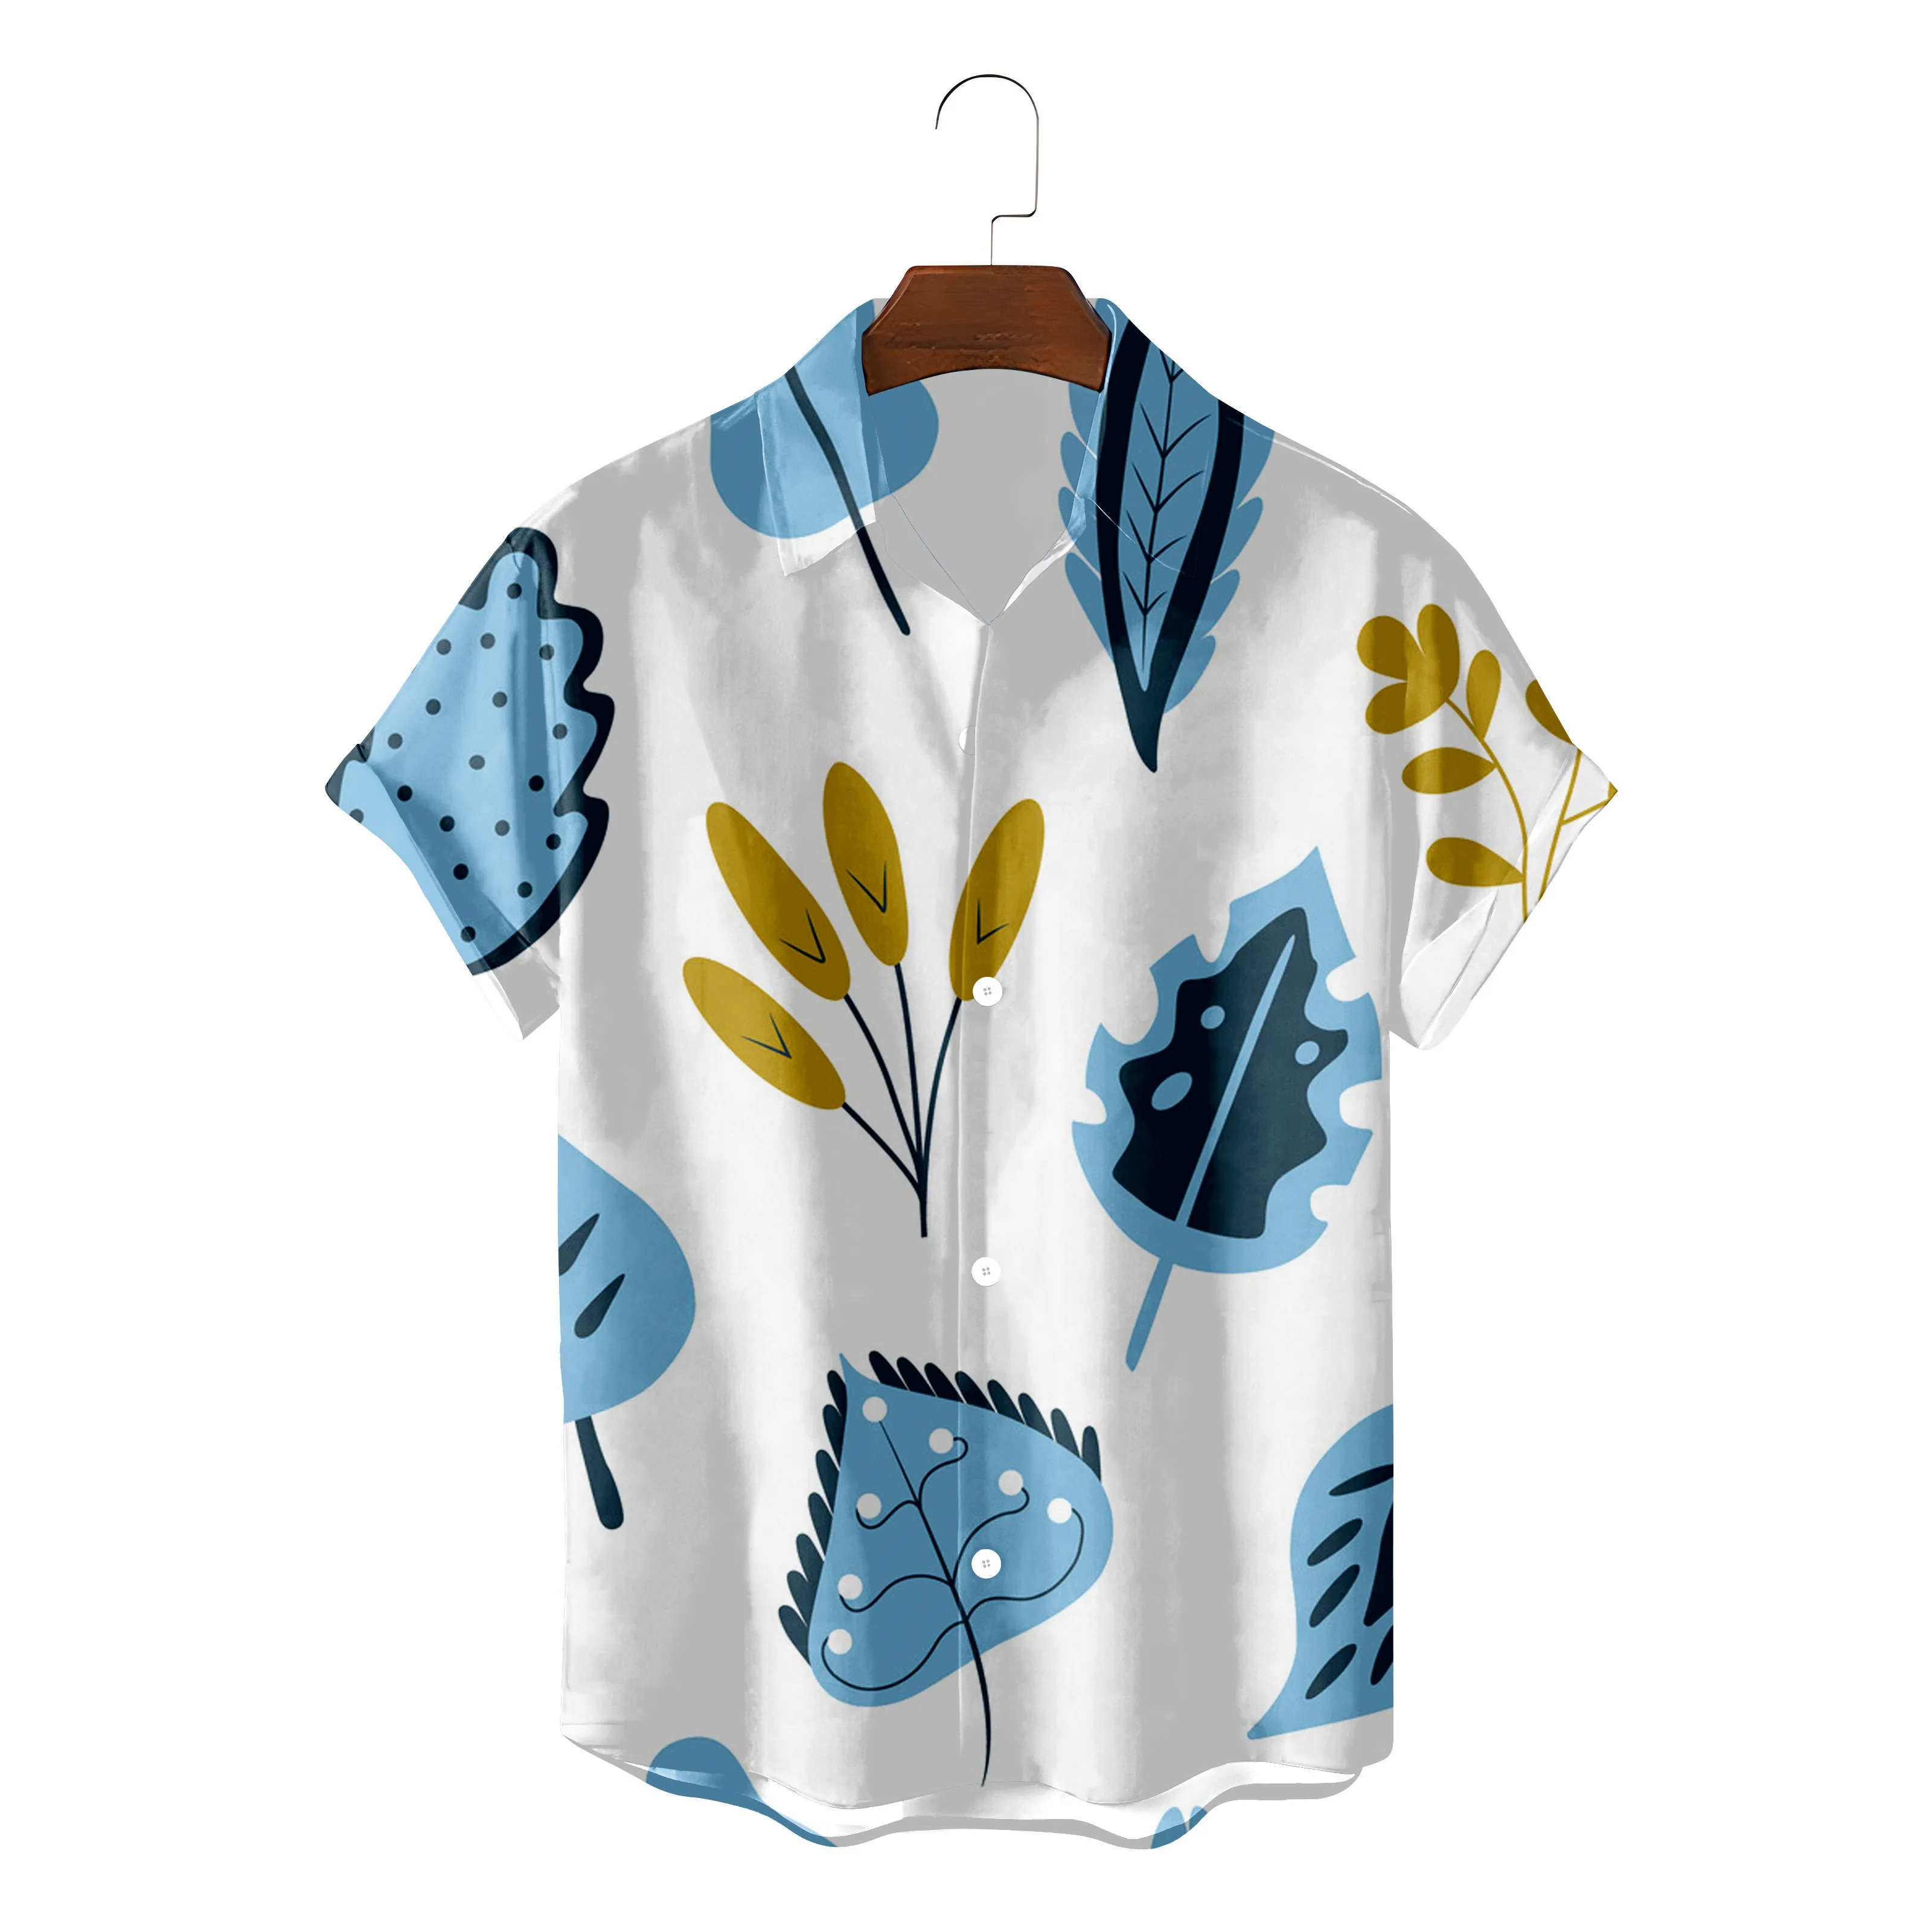 

Гавайская рубашка мужская с принтом листьев, модная уютная пляжная блуза с графическим принтом, на пуговицах, лето